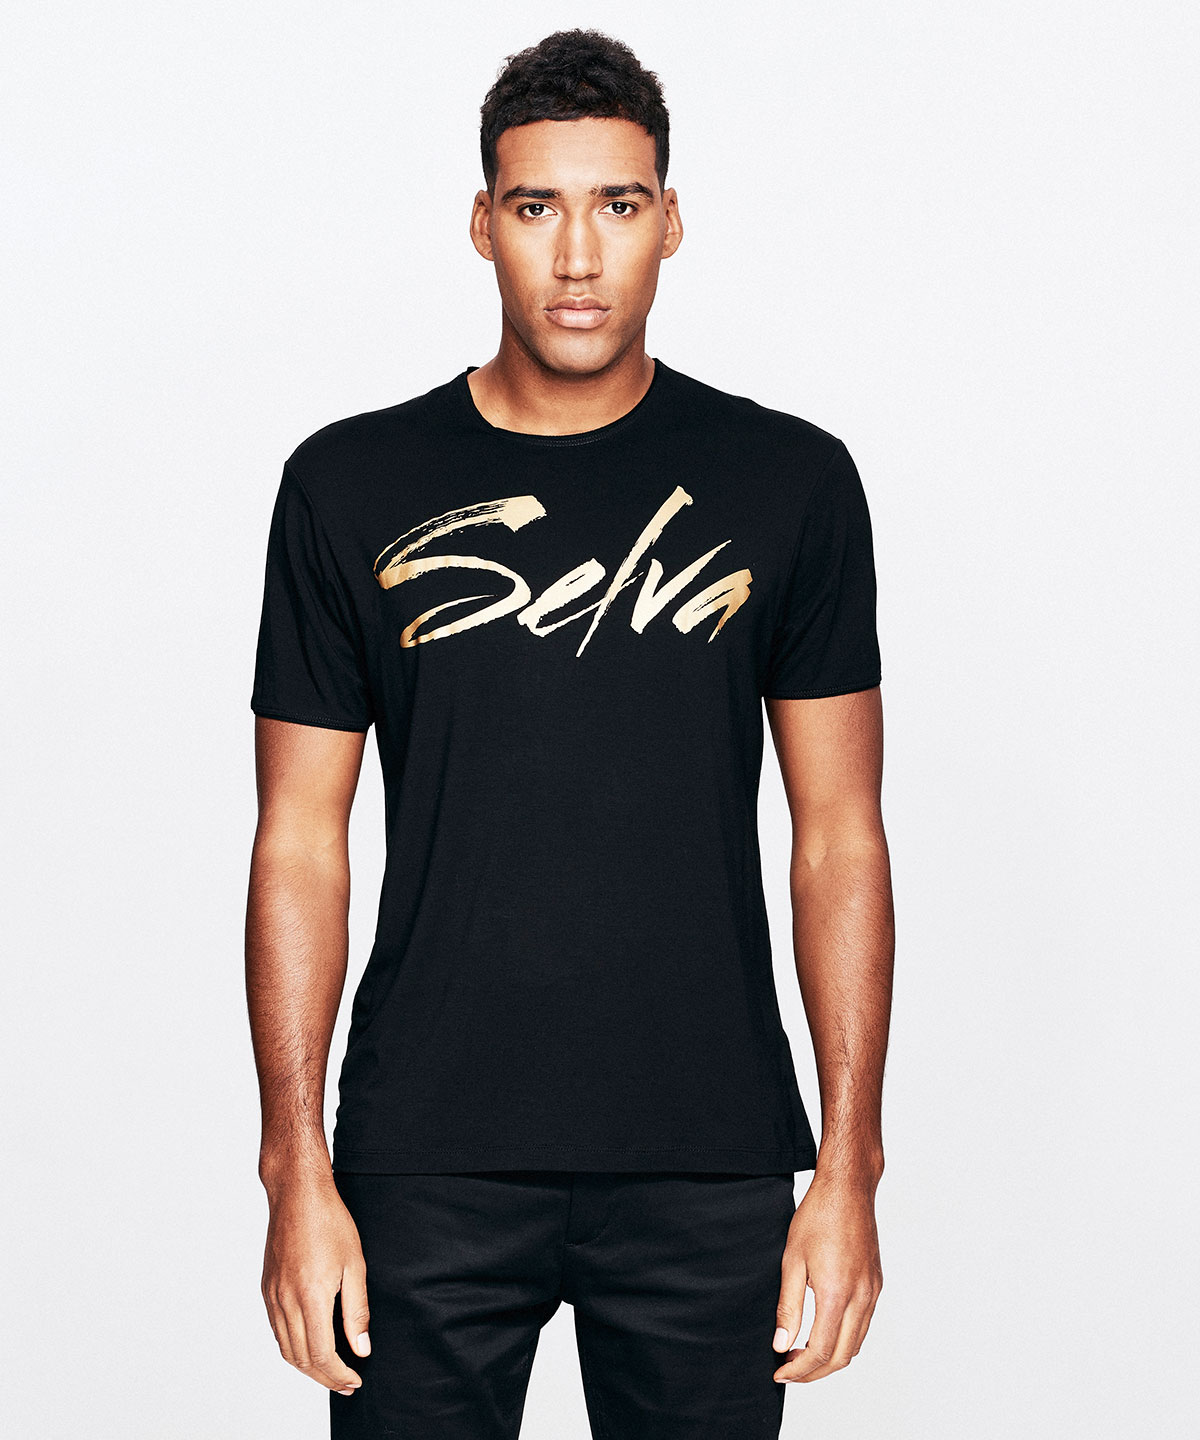 SELVA T-shirt Gold